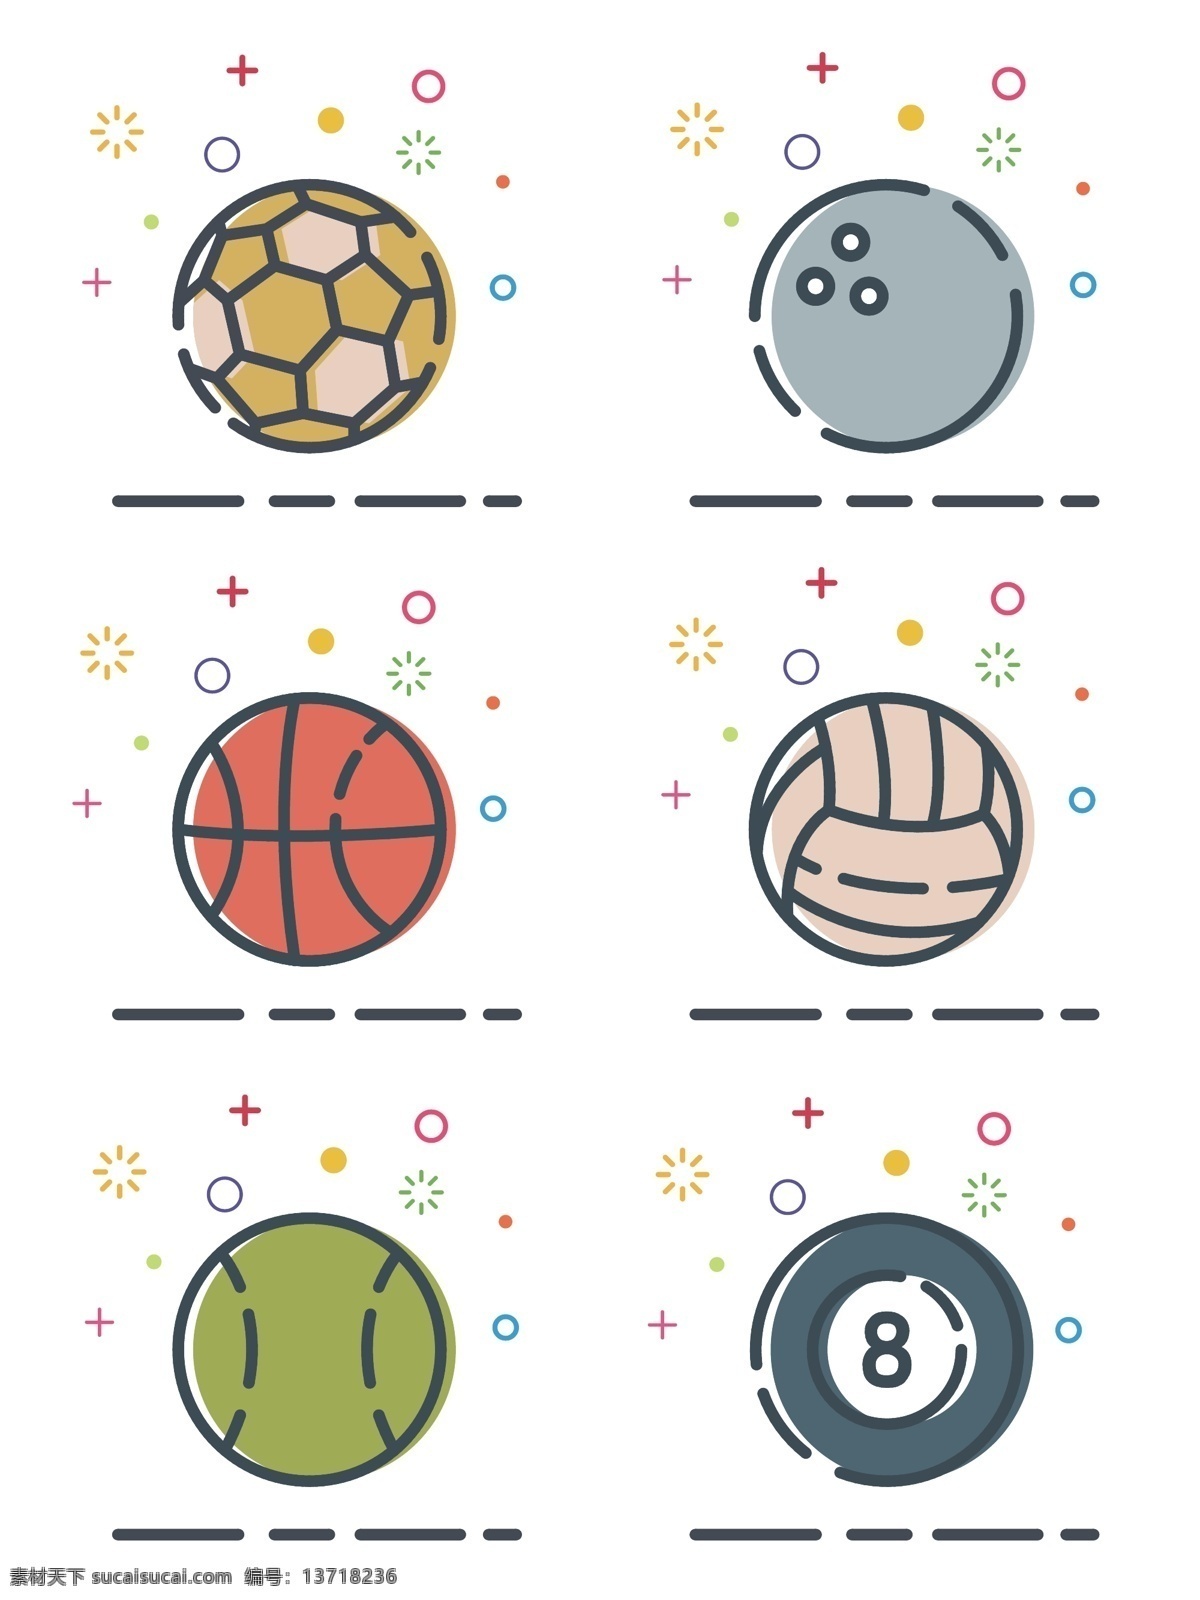 mbe 插画 风格 矢量 球类 体育器材 图标 简 笔画 简约 卡通 手绘 小清新 简笔画 元素 扁平 足球 保龄球 篮球 排球 台球 网球